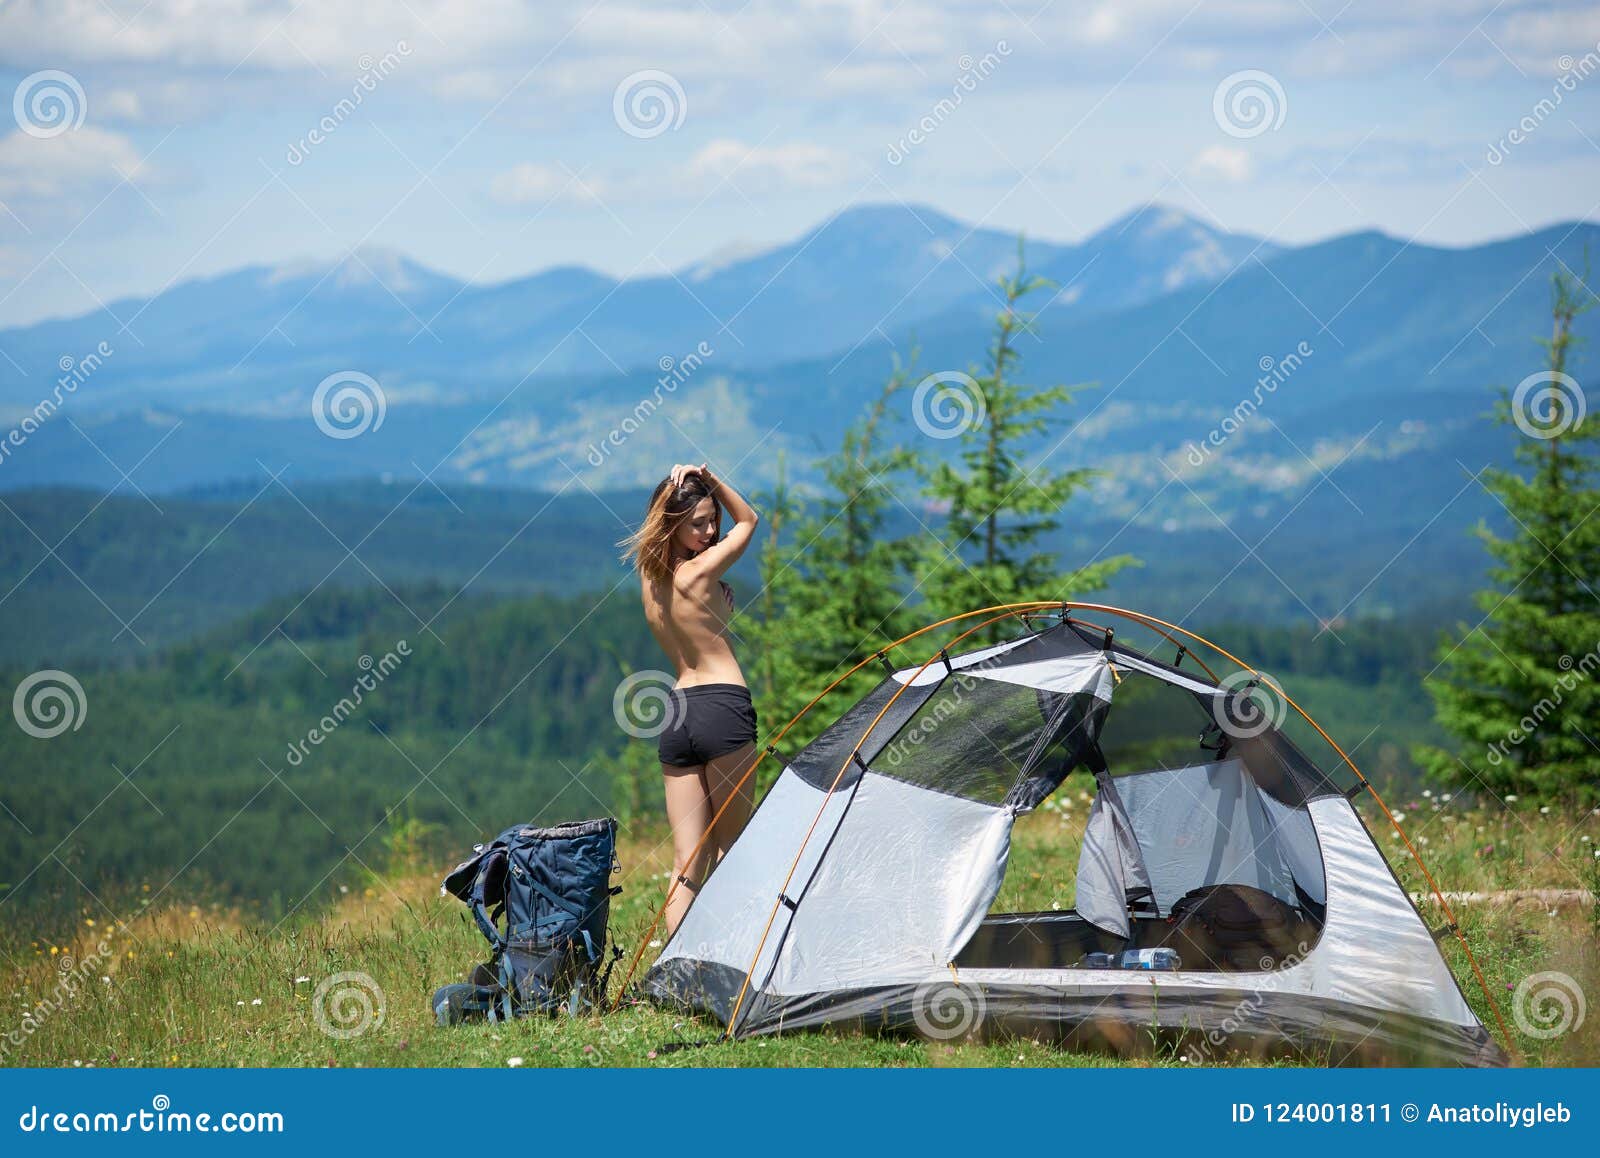 Women camping naked